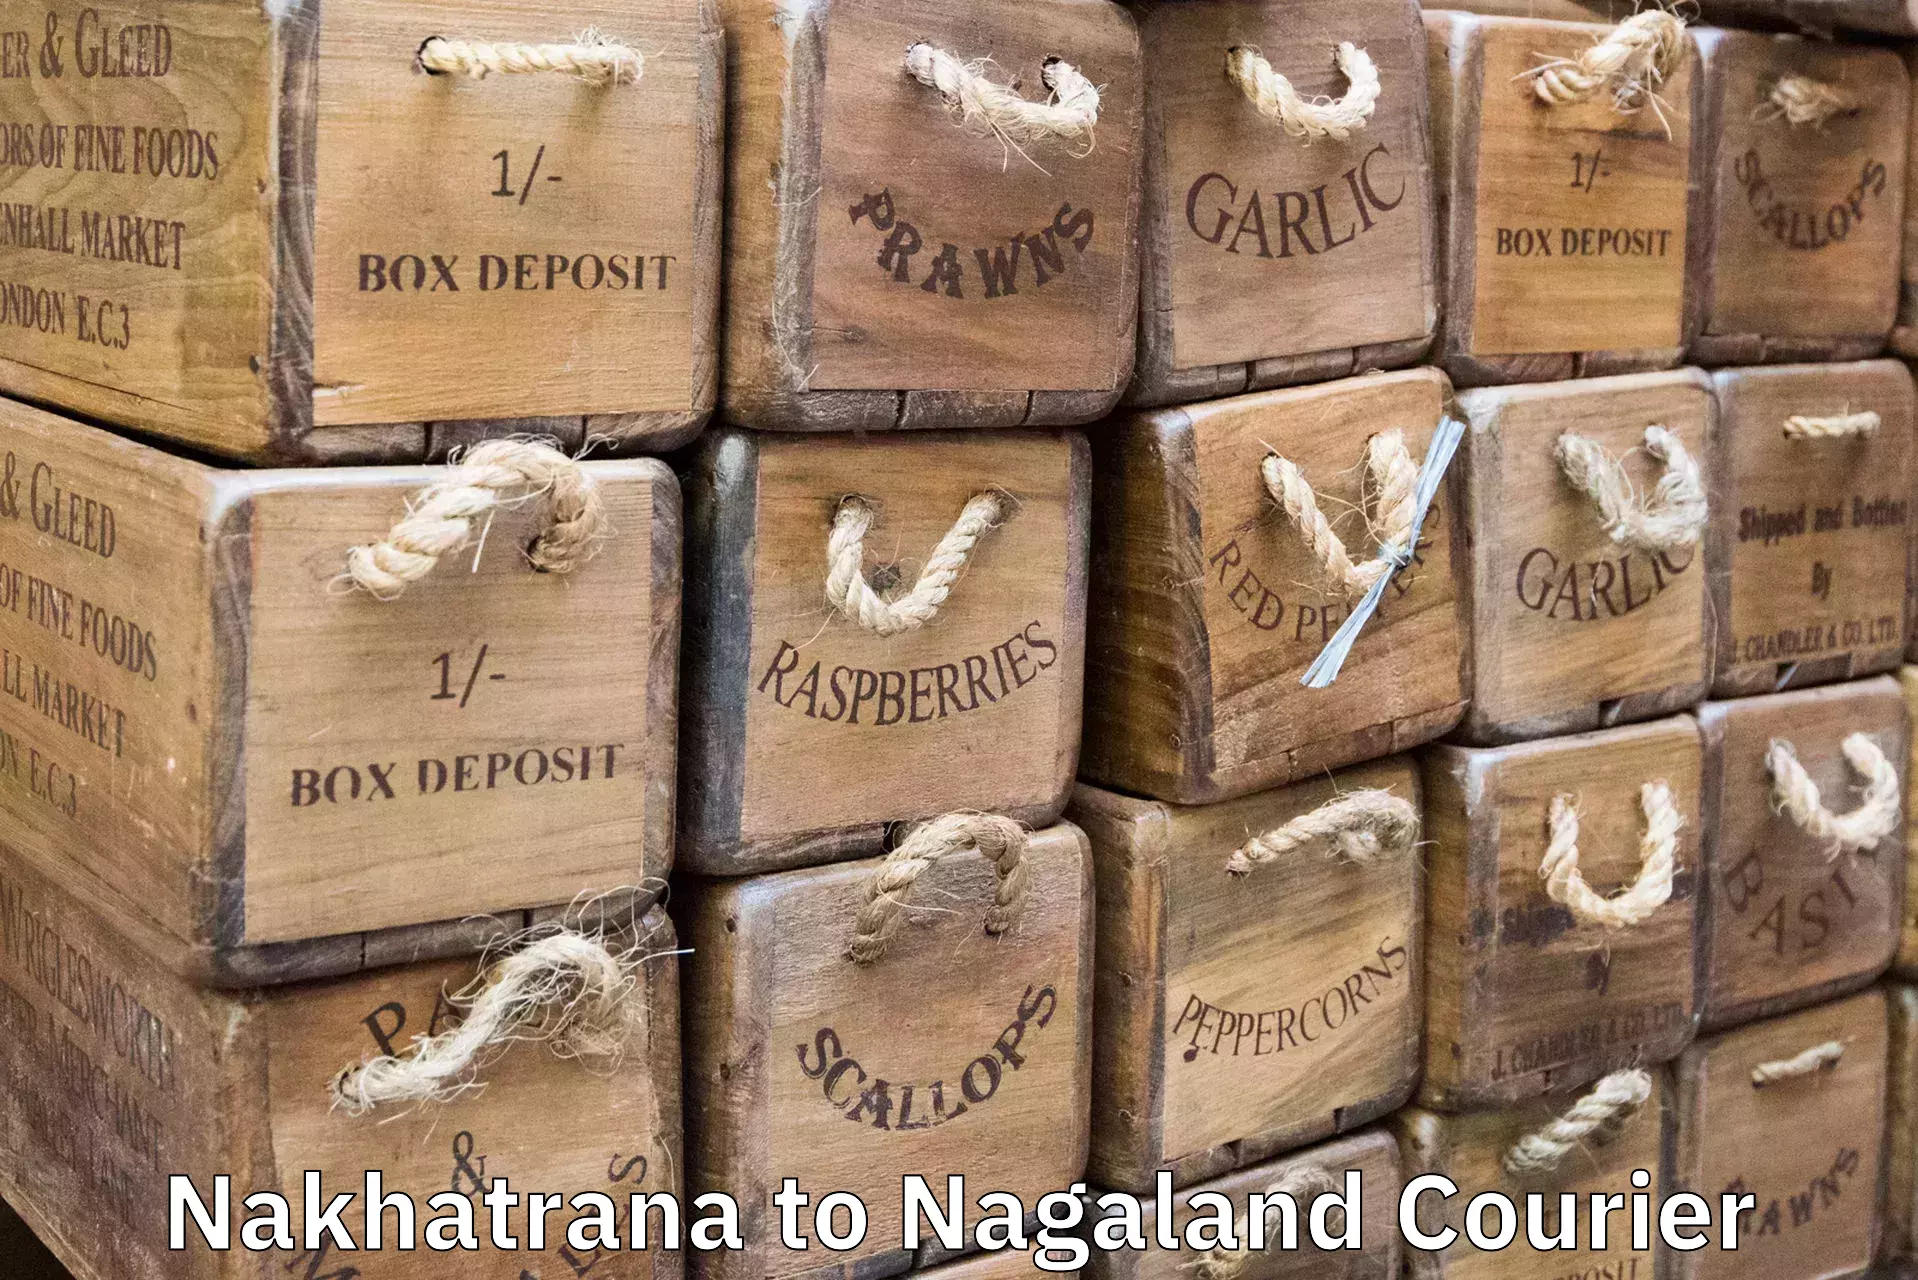 Baggage transport professionals Nakhatrana to NIT Nagaland